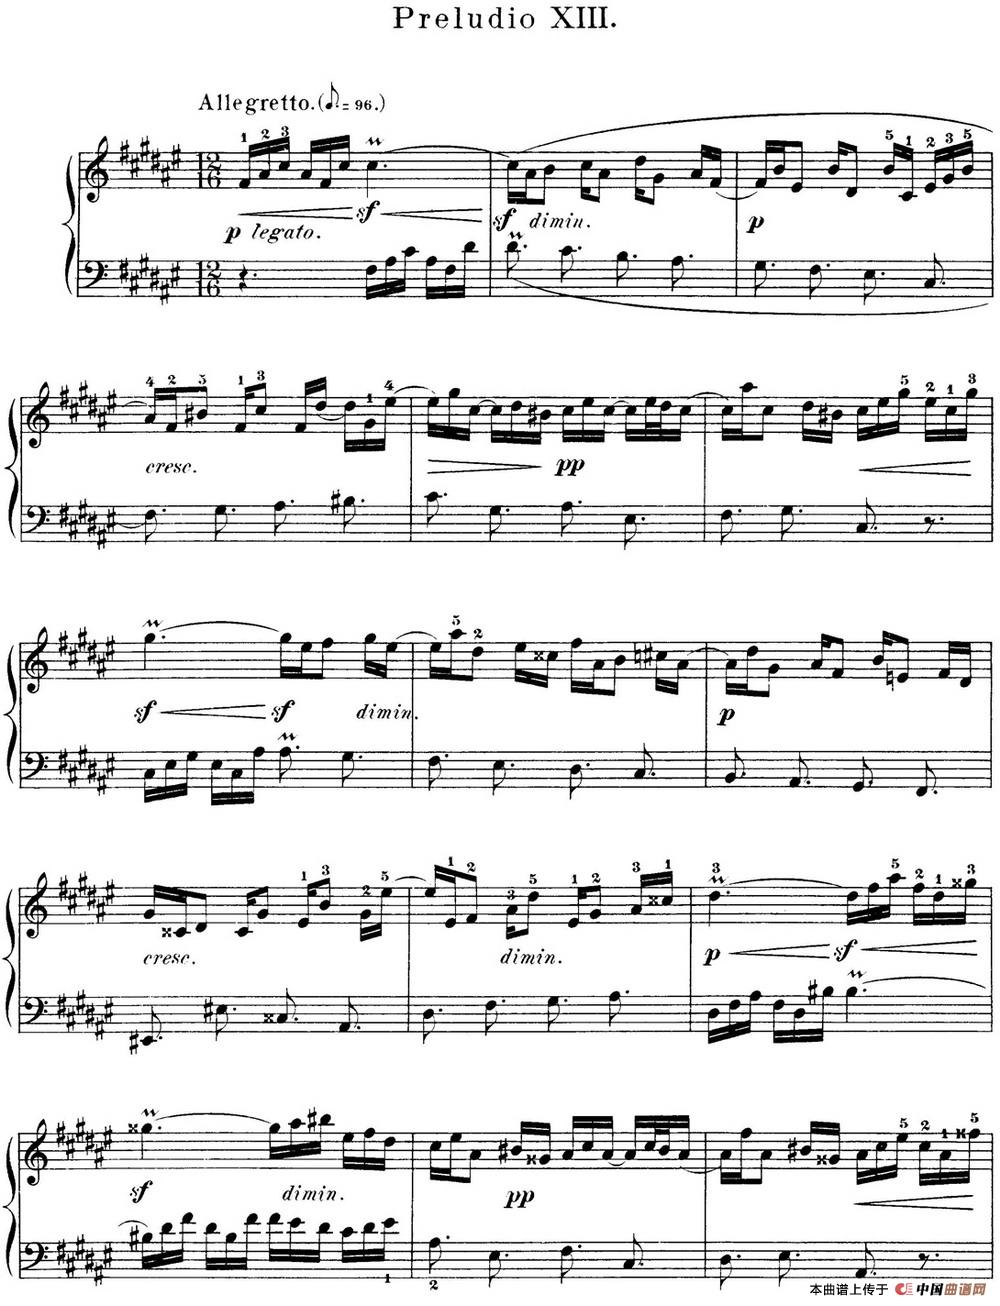 《巴赫《平均律钢琴曲集·第一卷》之前奏曲》钢琴曲谱图分享